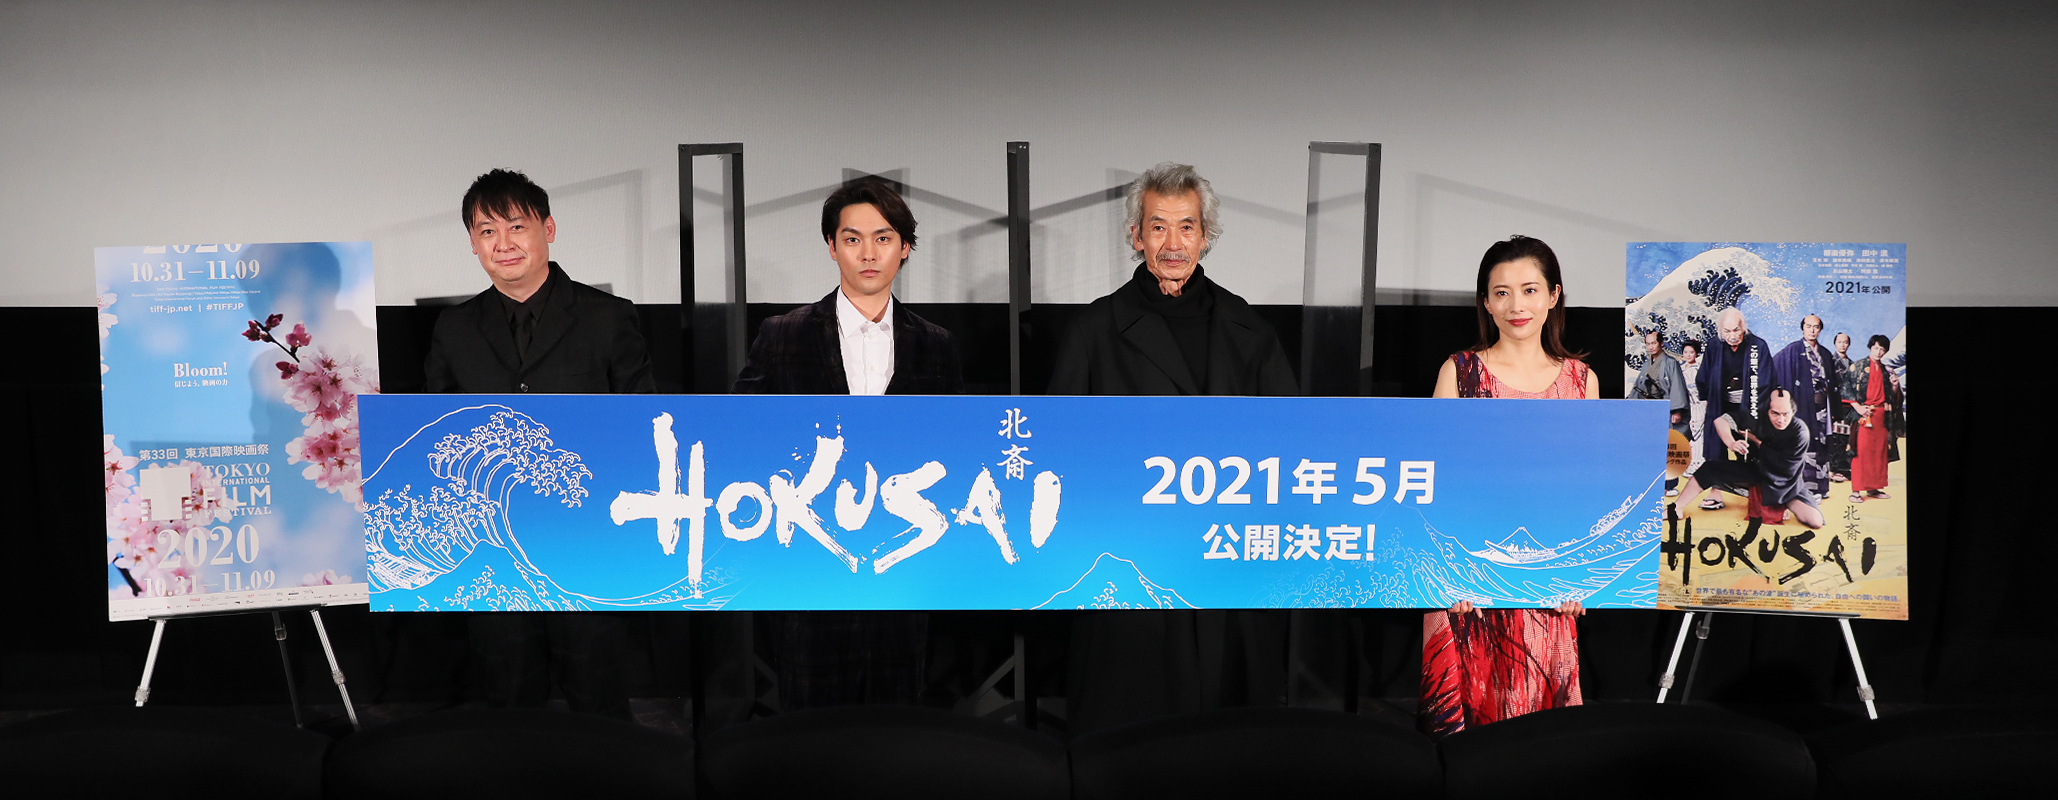 HOKUSAI (SA) Yuya Yagira (Actor), Min Tanaka (Actor), Hajime Hashimoto (Director), Len Kawahara (Screenplay)